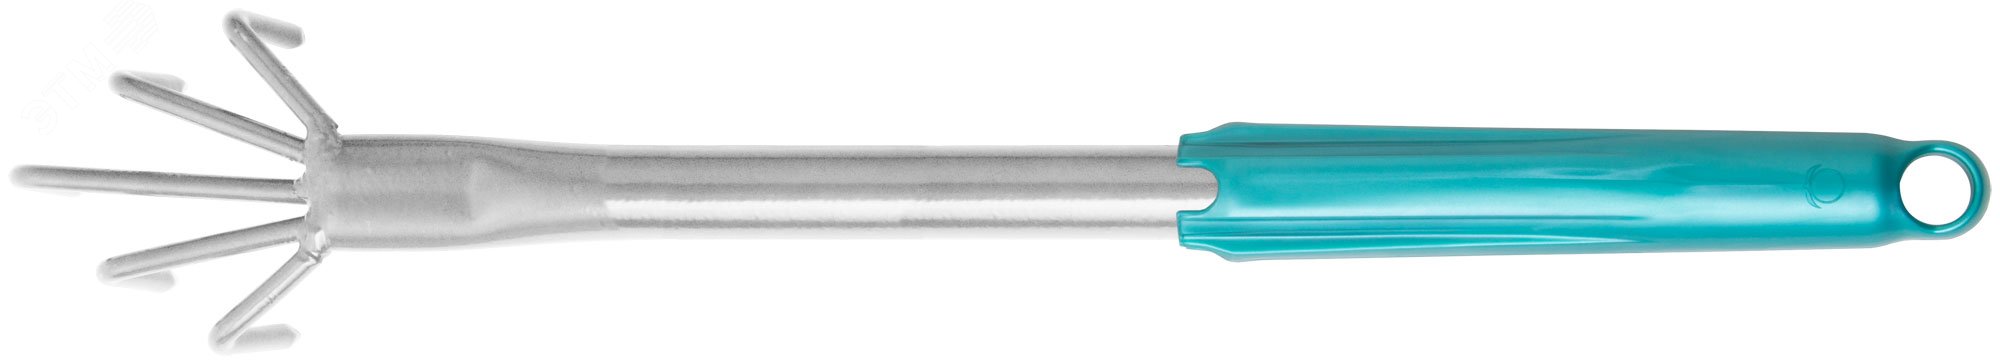 Рыхлитель с ручкой цельнометаллический, 5 зубьев 76846 РОС - превью